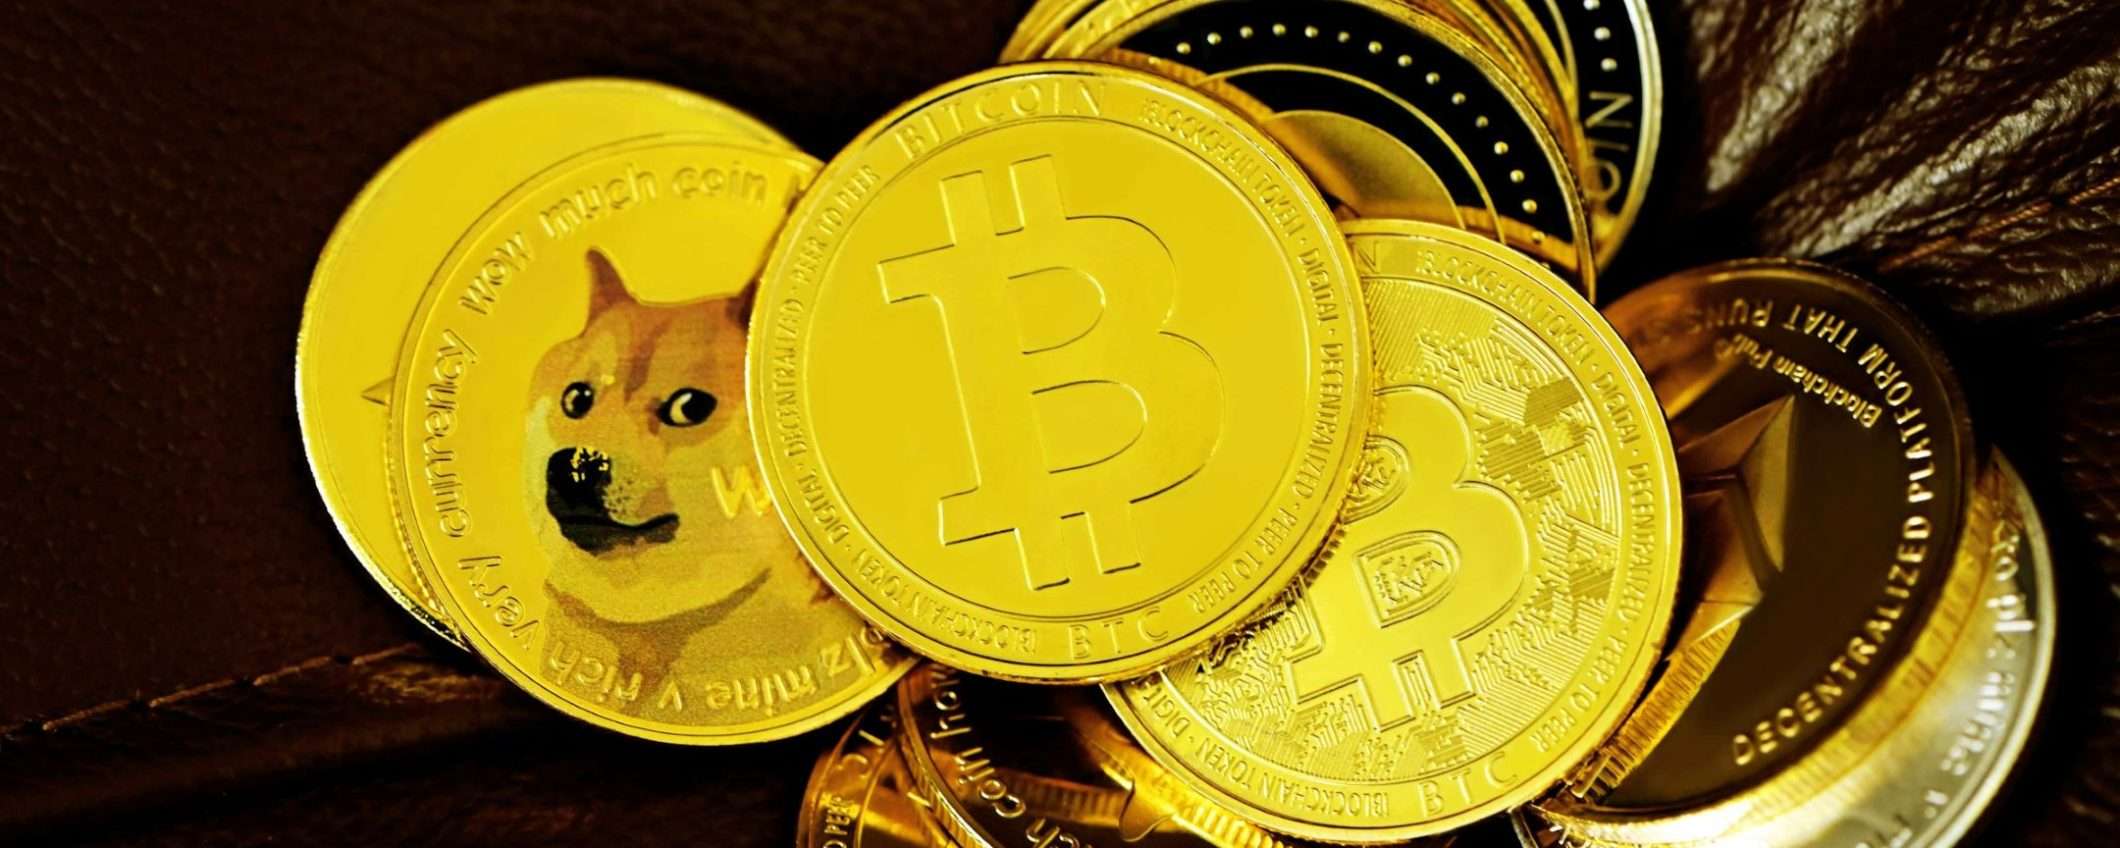 Non c'è solo Bitcoin: riflettori accesi su altre 5 criptovalute dopo l'halving